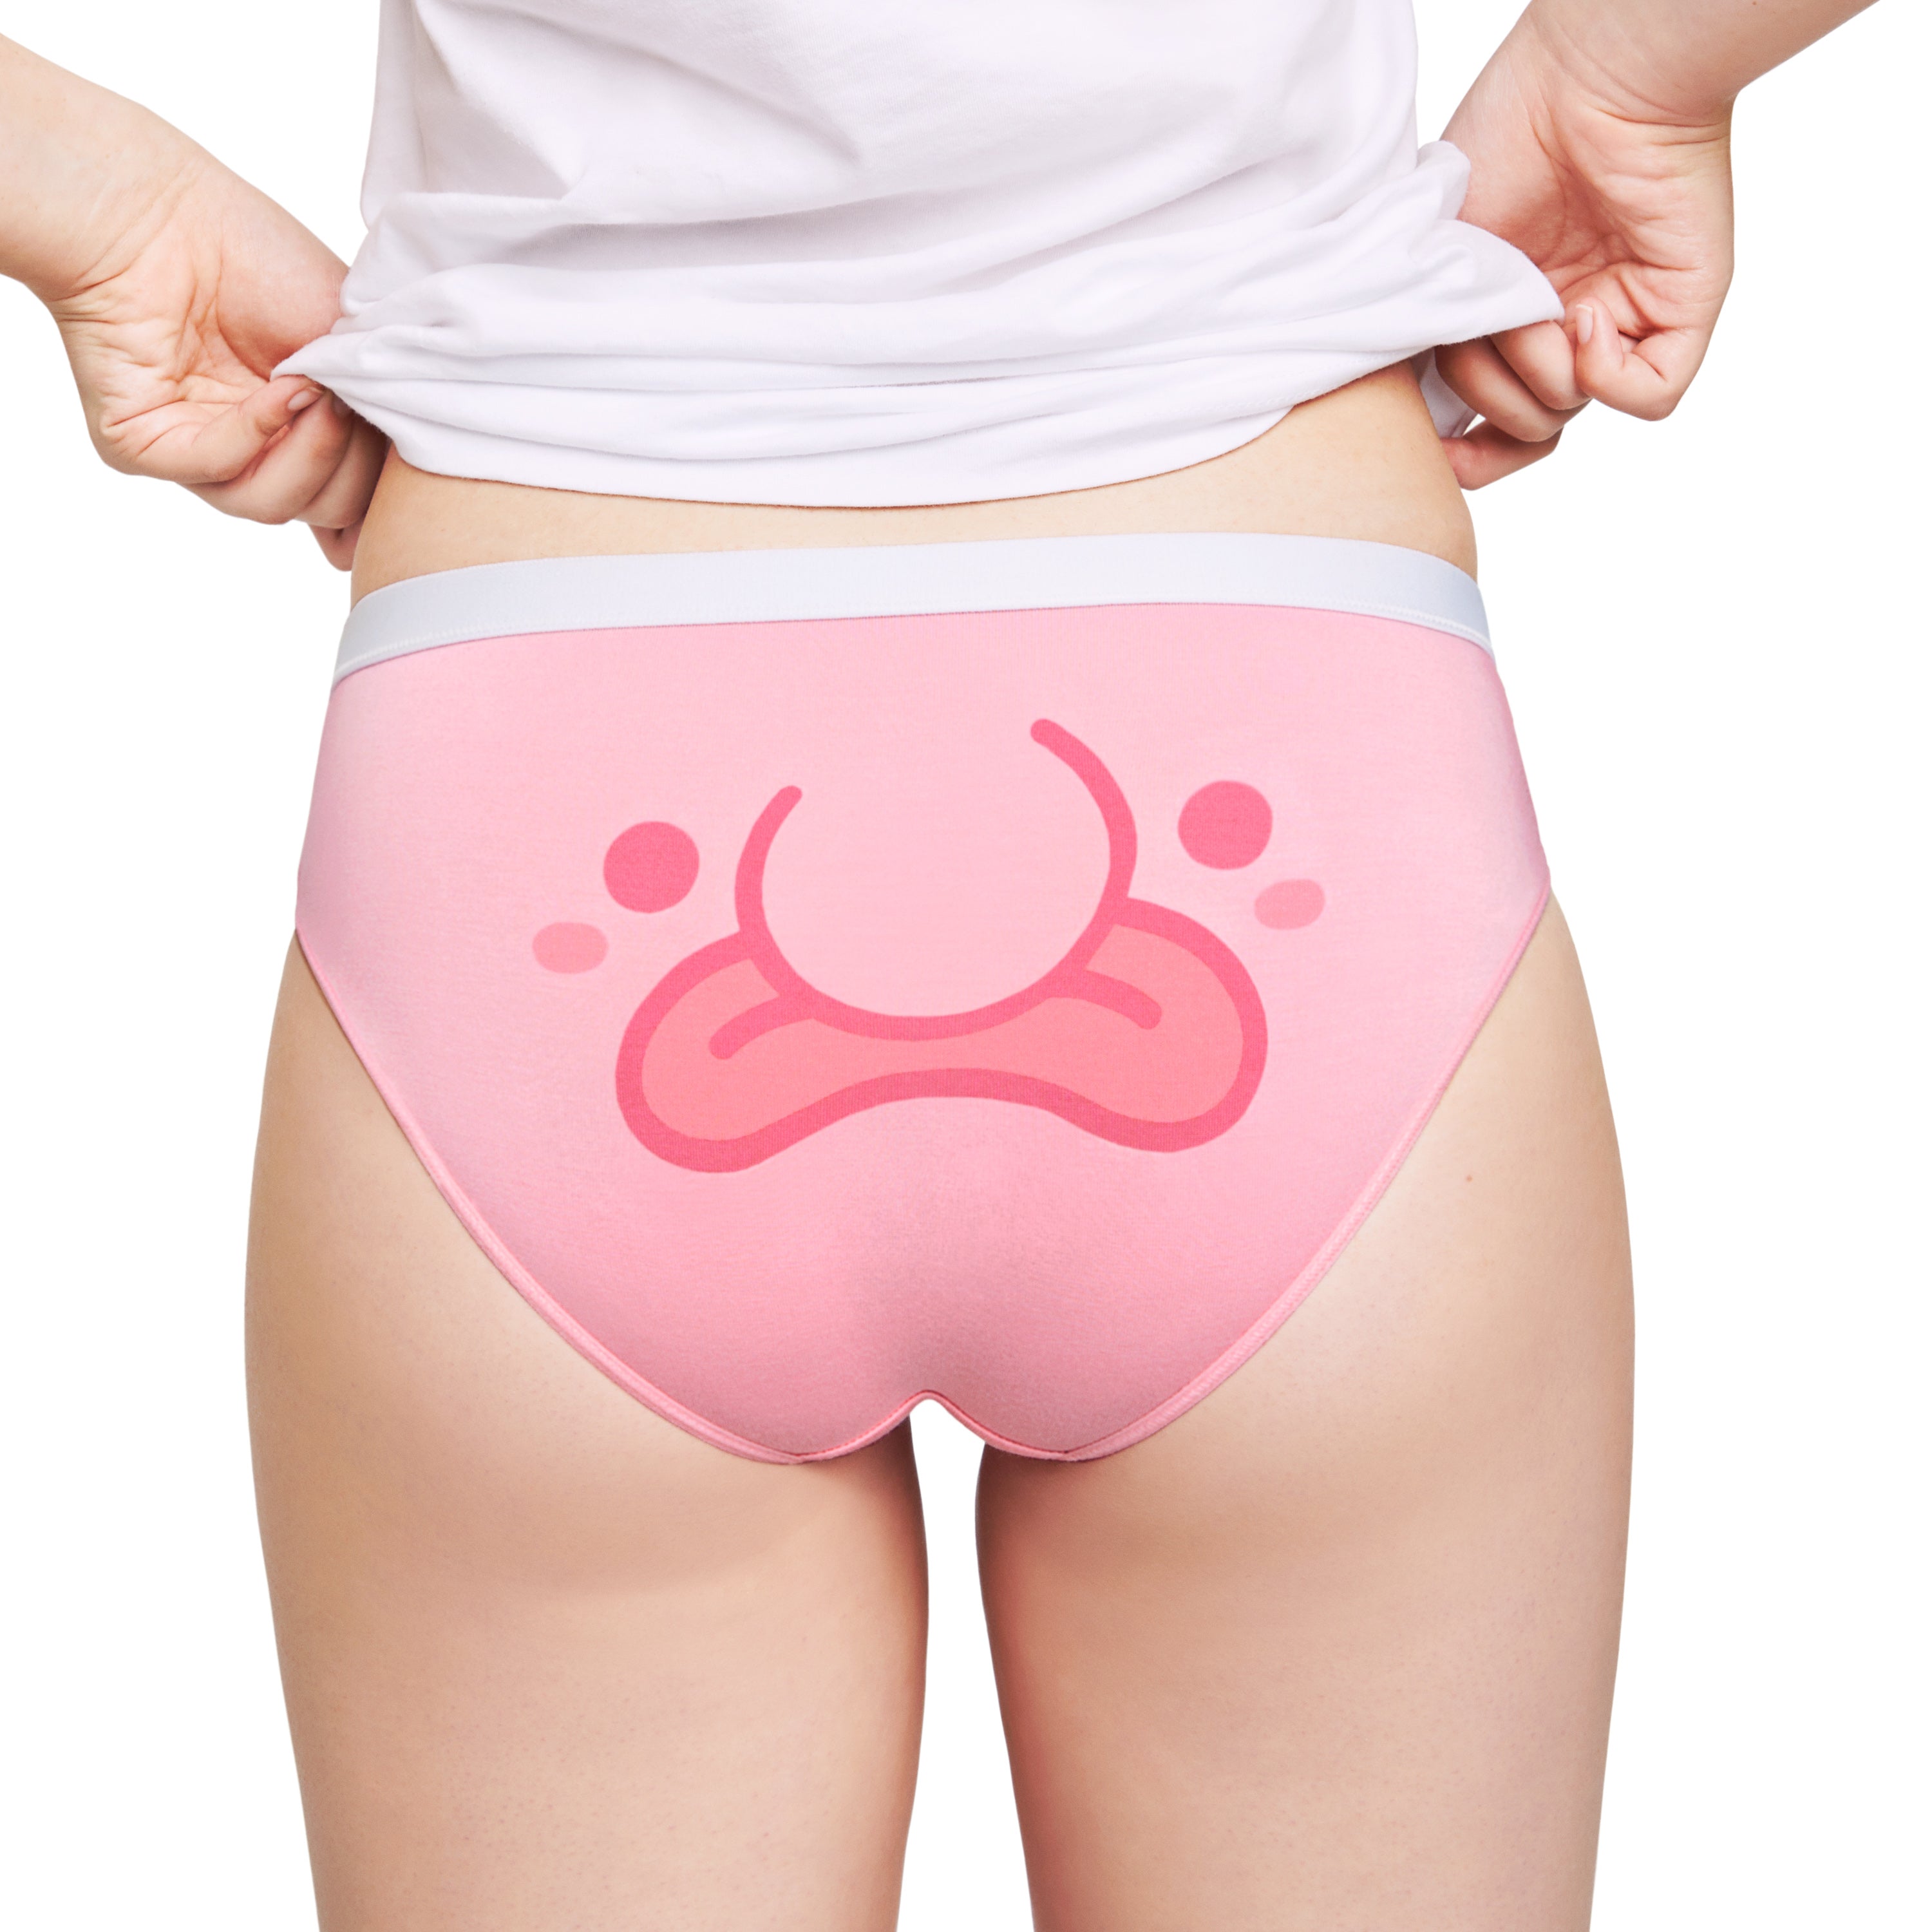 Blobfish underwear